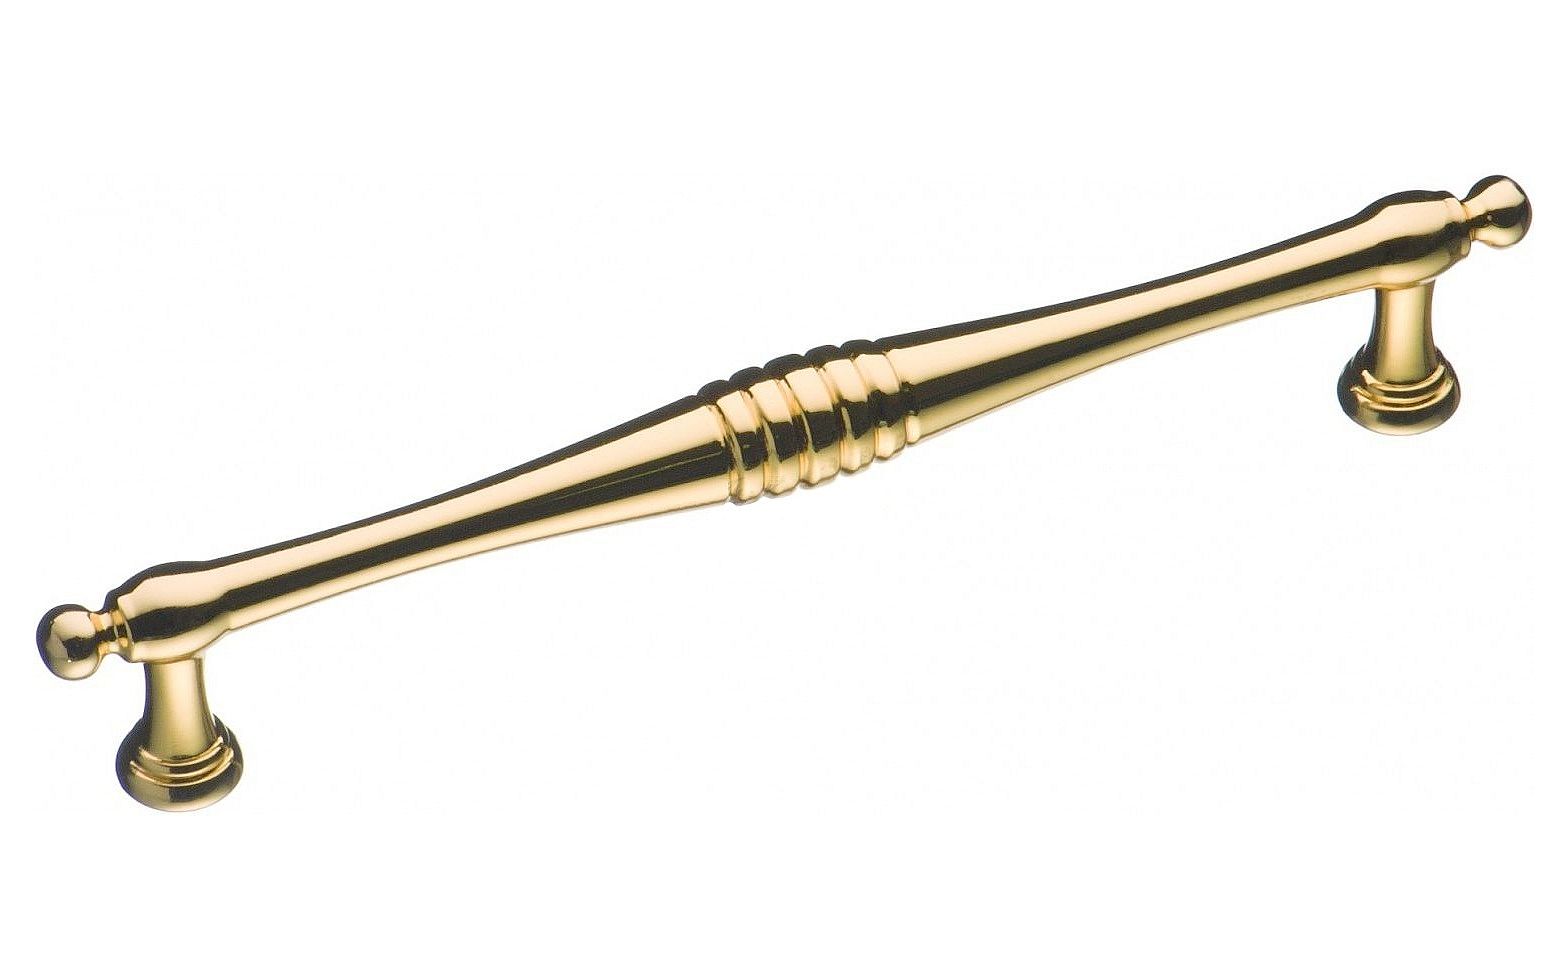 Ручка мебельная скоба 160мм золото BU 004.160.19 Brass / 69307 / оптом и в розницу / мебельная фурнитура "ЛАВР"